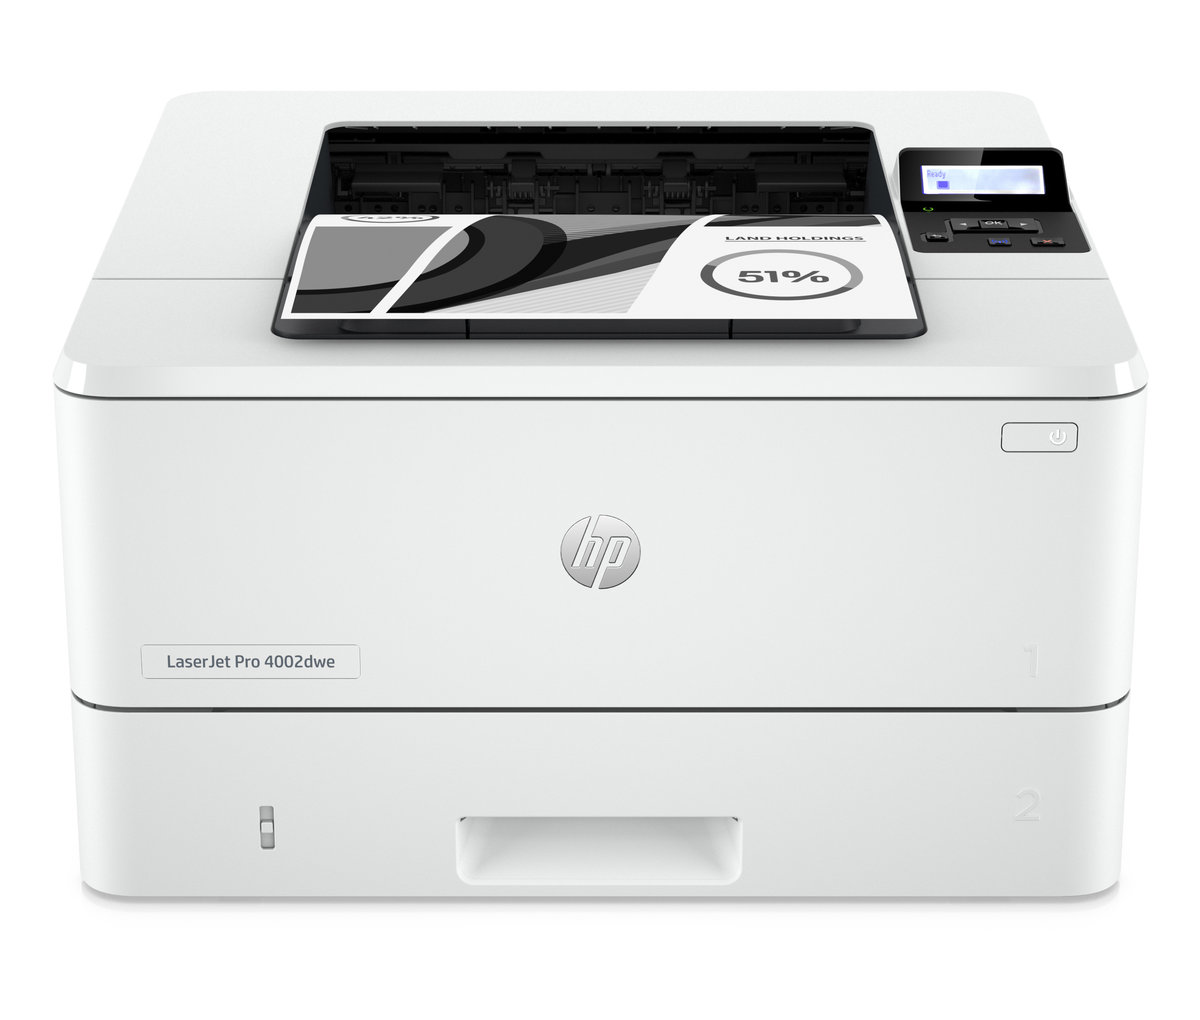 Náplně do tiskárny HP LaserJet Pro 4002dwe